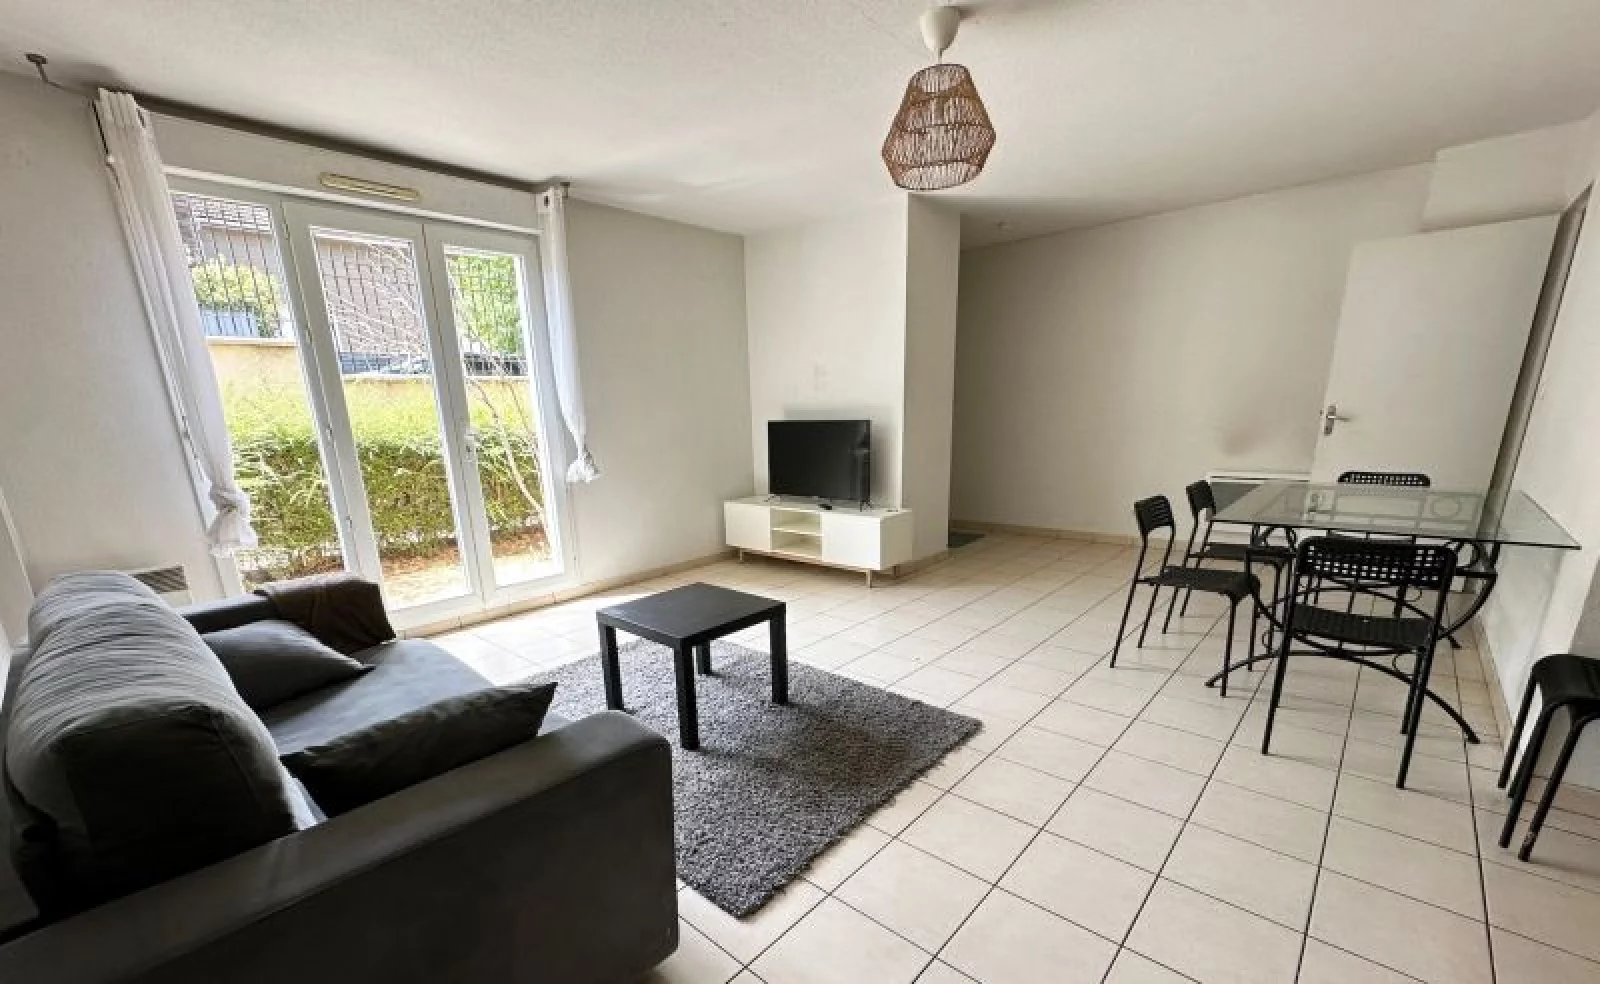 Location appartement meublé duplex 4 pièces 92m² (Paris est 94 - Bry sur Marne)